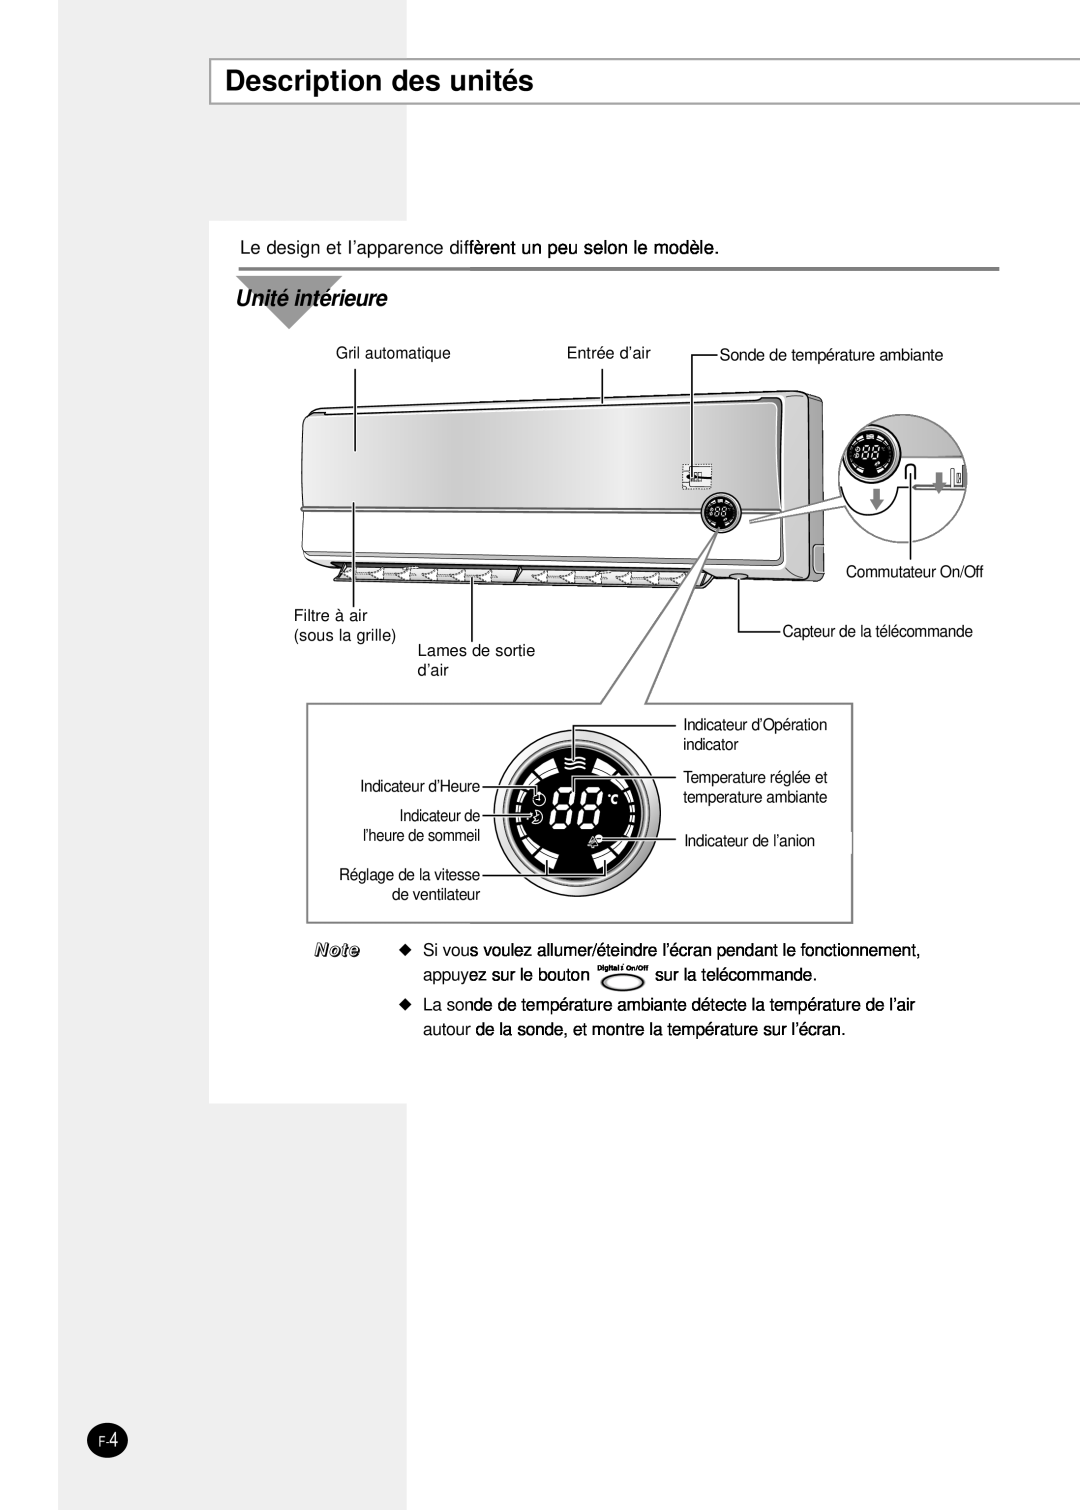 Samsung SH24TP6 manual Description des unités, Unité intérieure 